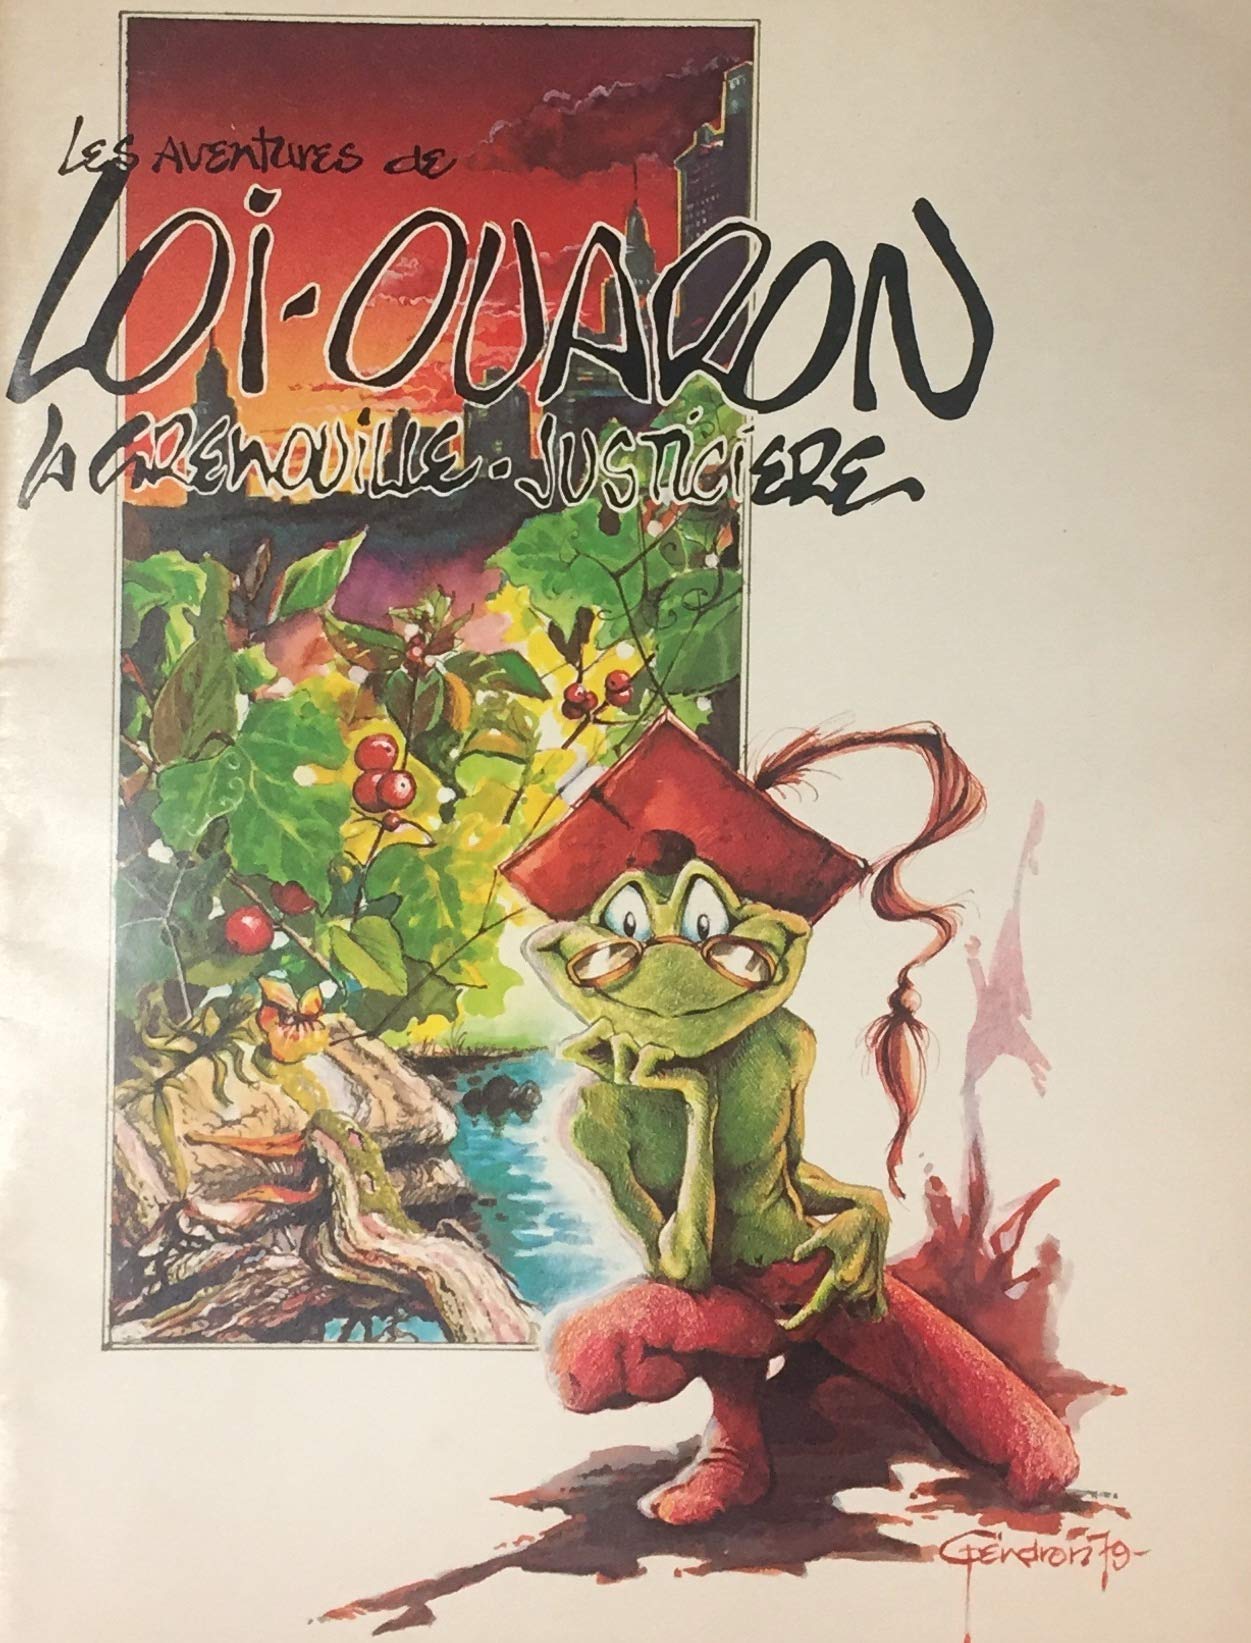 Livre ISBN 2550007433 Les aventures de Loi-Ouaron, la grenouille-justicière (Gendron)